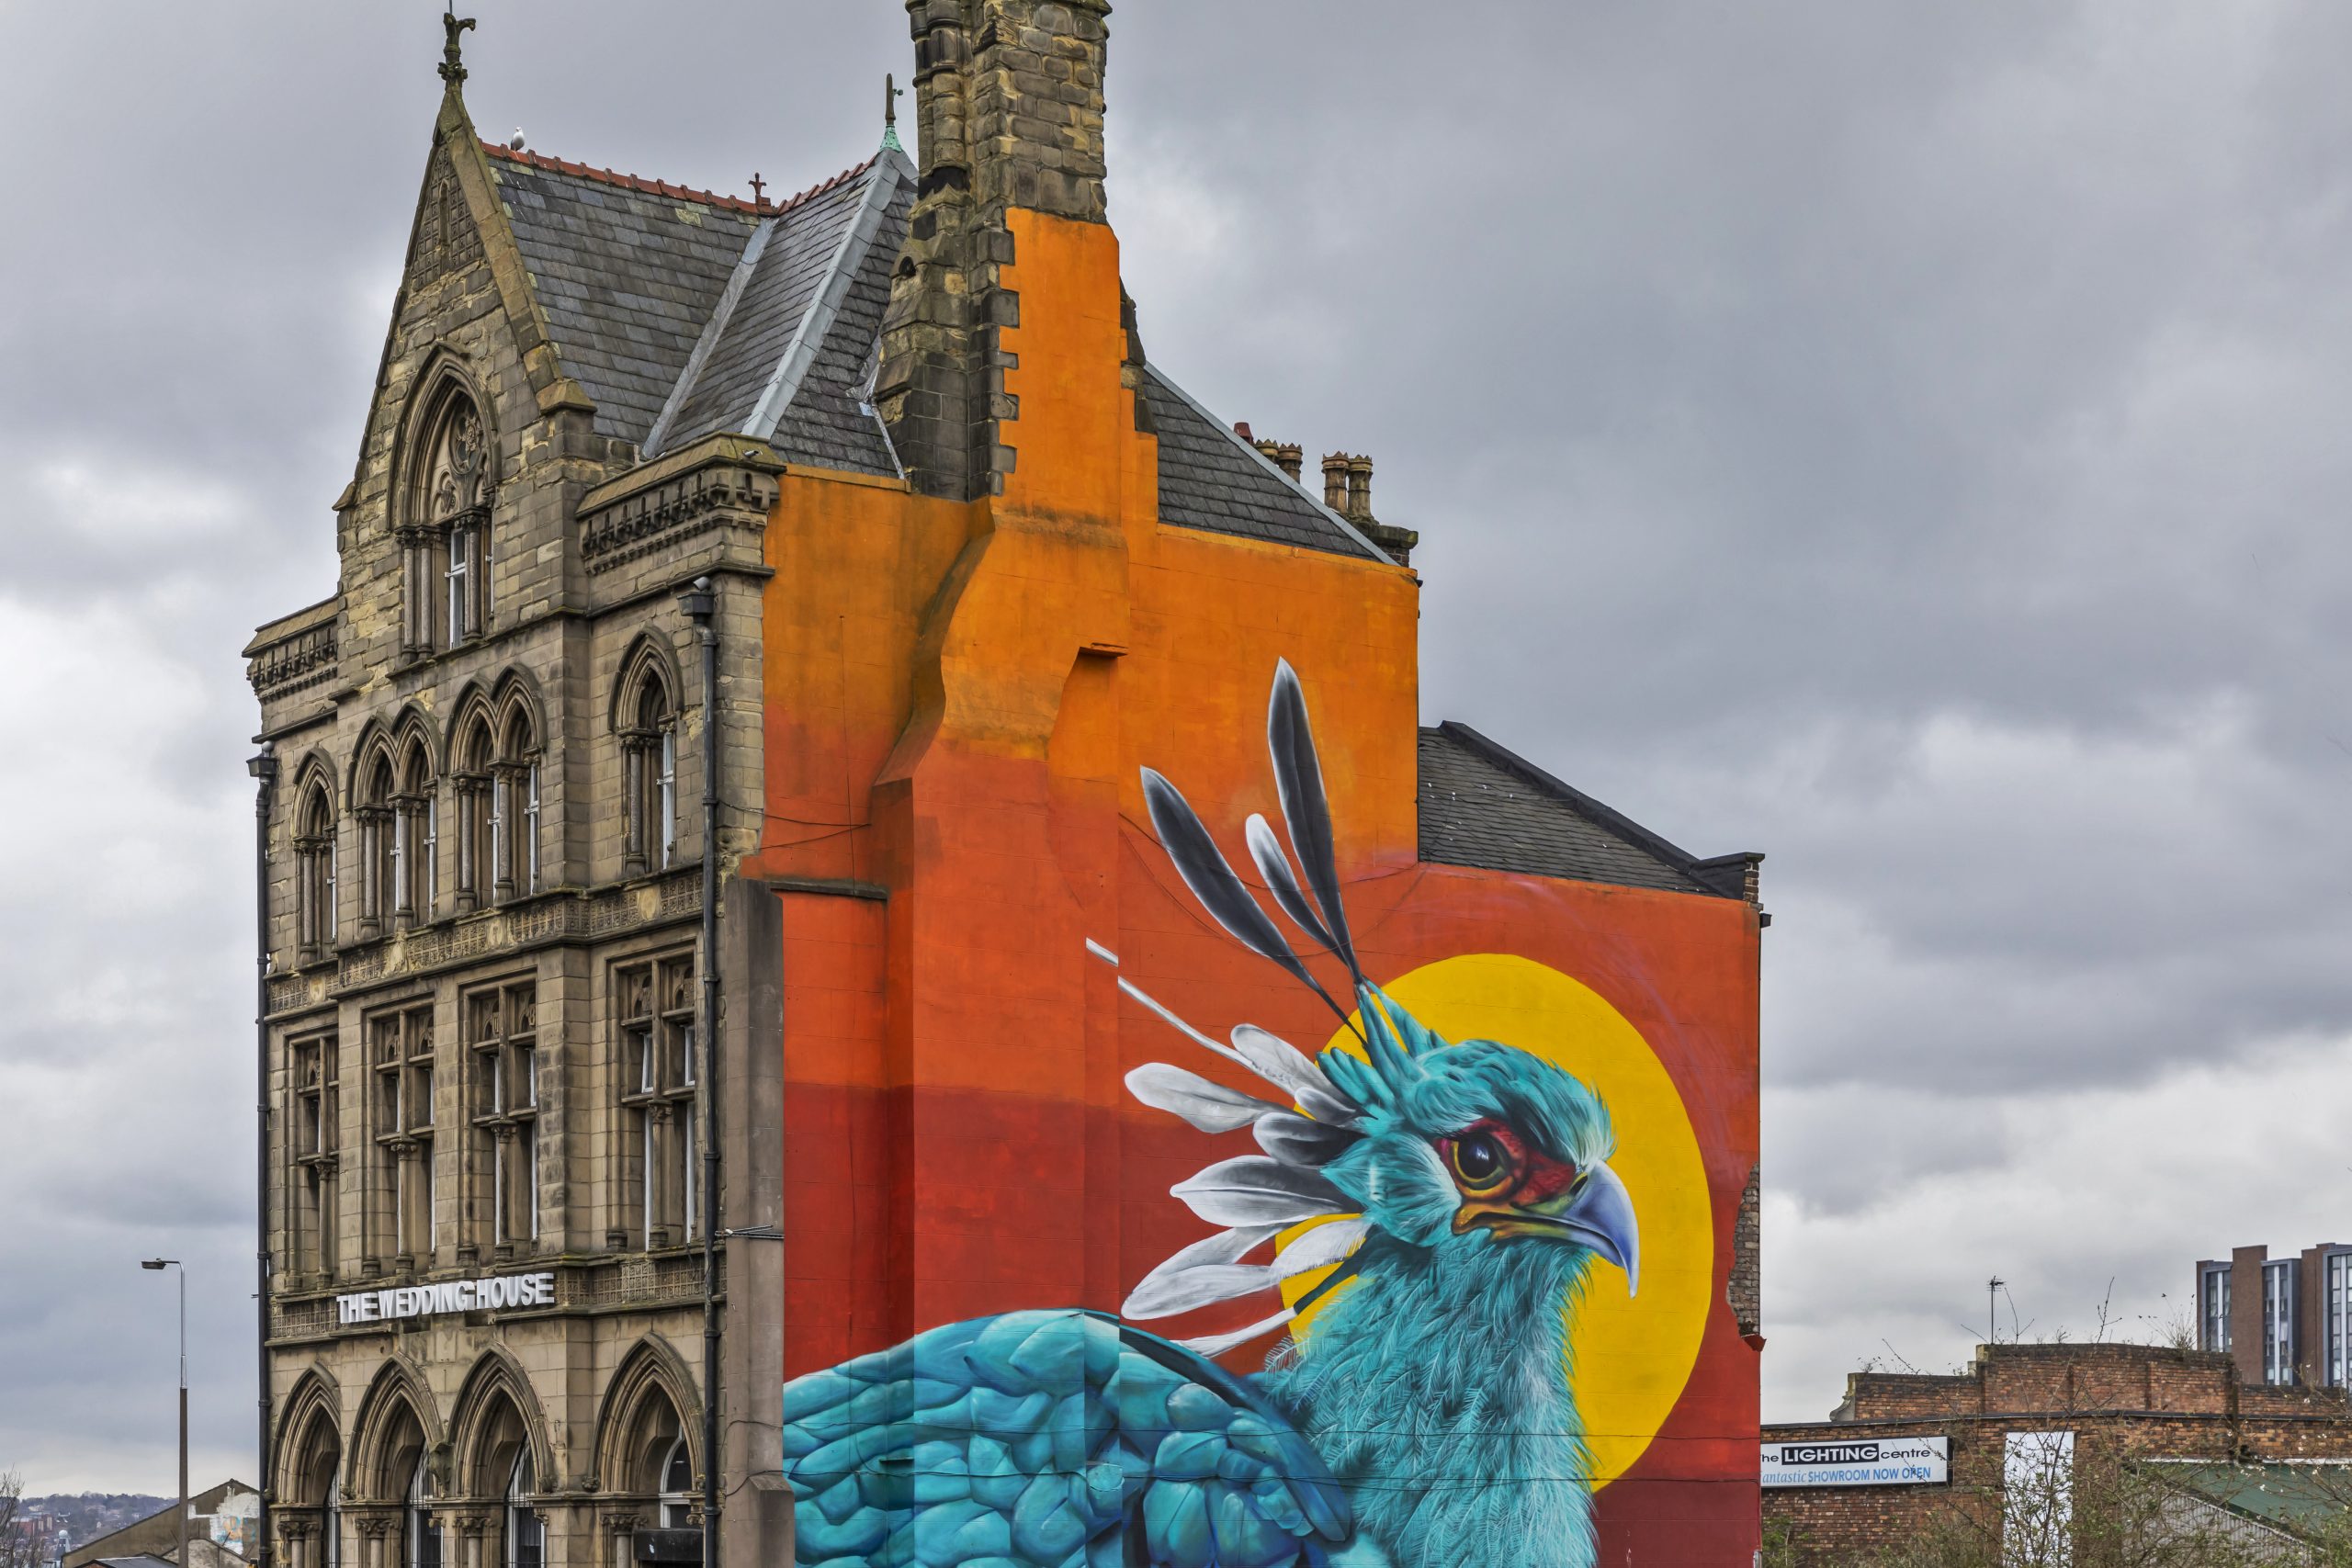 Il murales Liver Bird realizzato dallo street artist John Culshow sui muri della wedding house nel Baltic Triangle. Il liver bird è l’uccello mitico mezzo cormorano e mezzo aquila, simbolo della città di Liverpool.